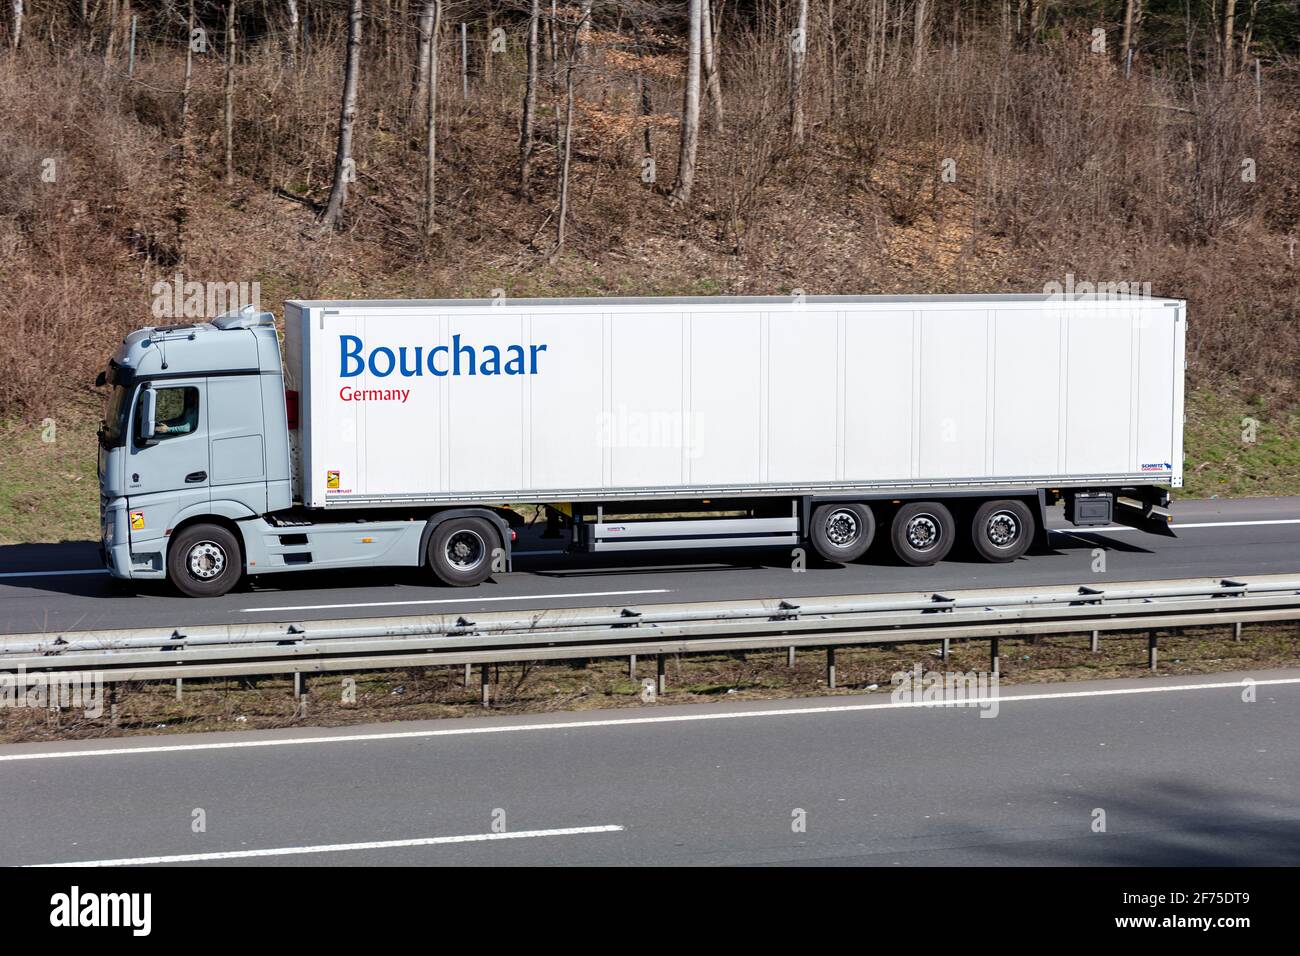 Bouchaar Mercedes-Benz Actros truck with box trailer on motorway. Stock Photo